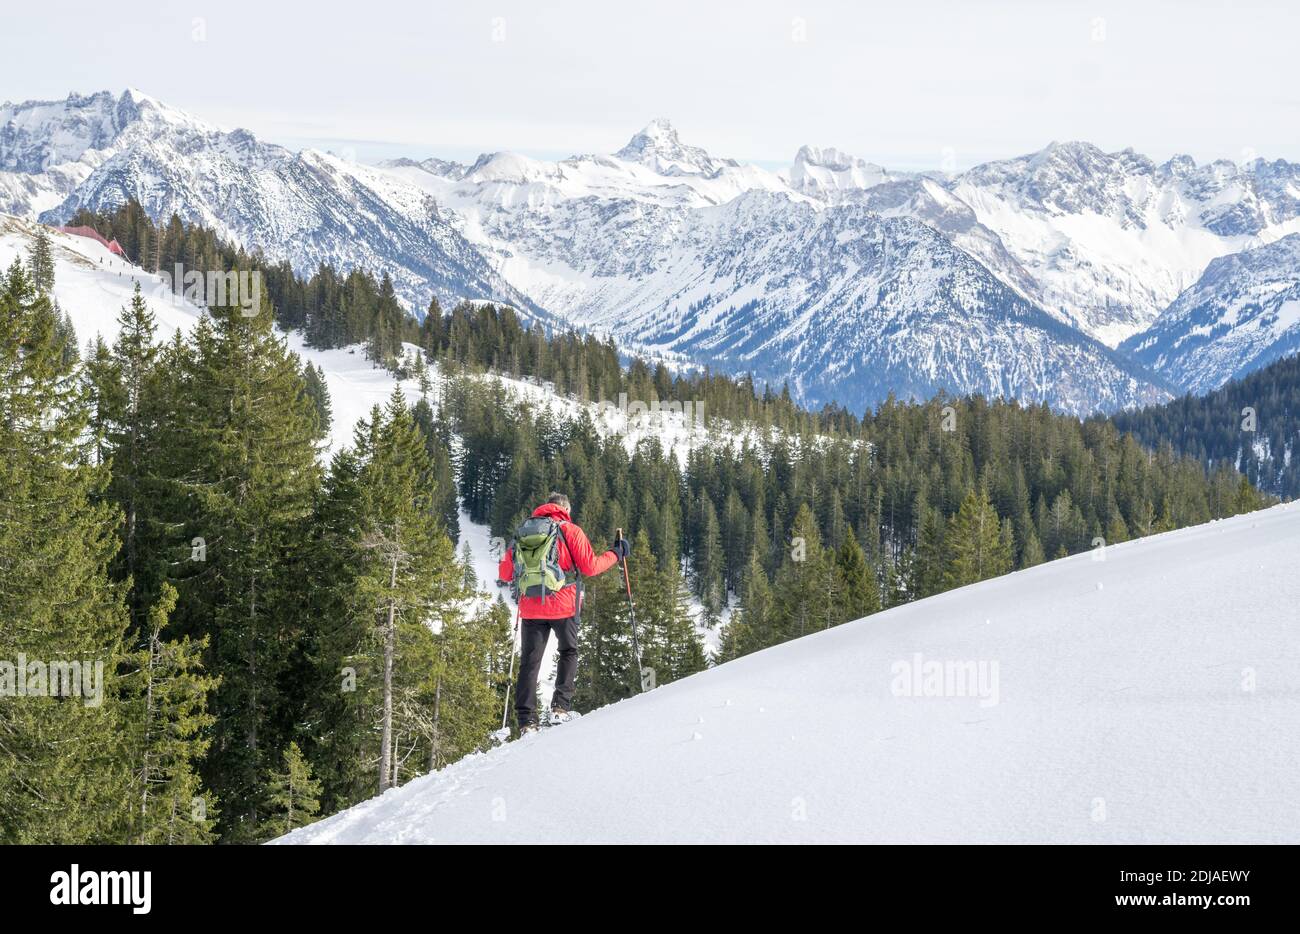 Senior Mann ist Schneeschuhwandern in alpinen Schnee Winter Berge. Allgau, Bayern, Deutschland. Stockfoto